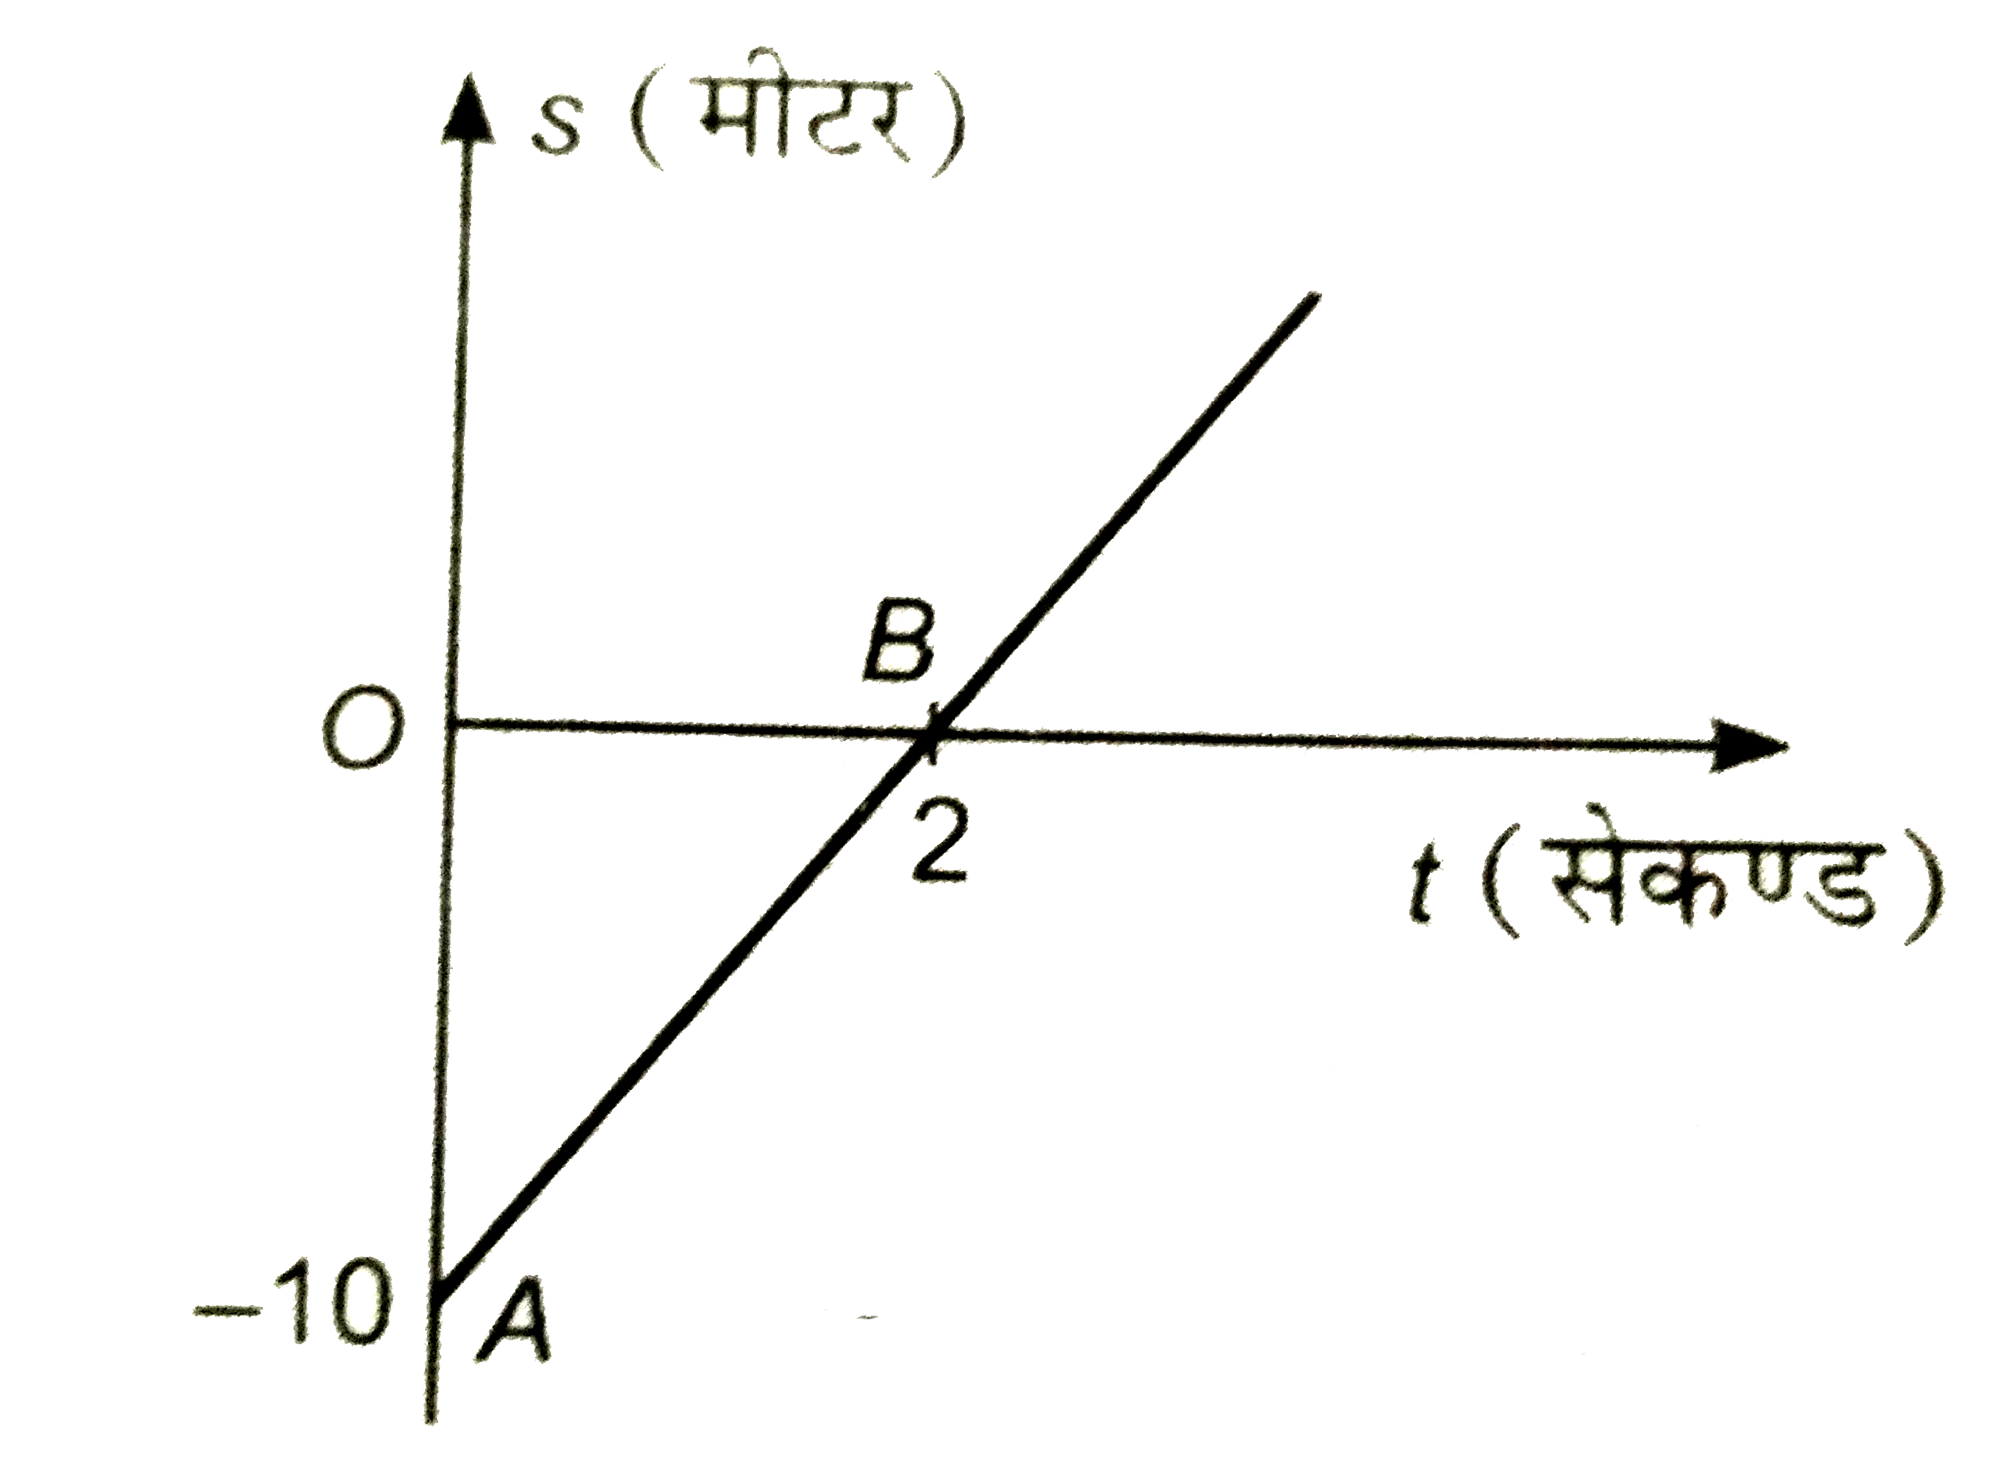 एक कण का विसथापन (s) समय (t) ग्राफ चित्र में प्रदर्शित है। कण की गति की विवेचना कीजिए।